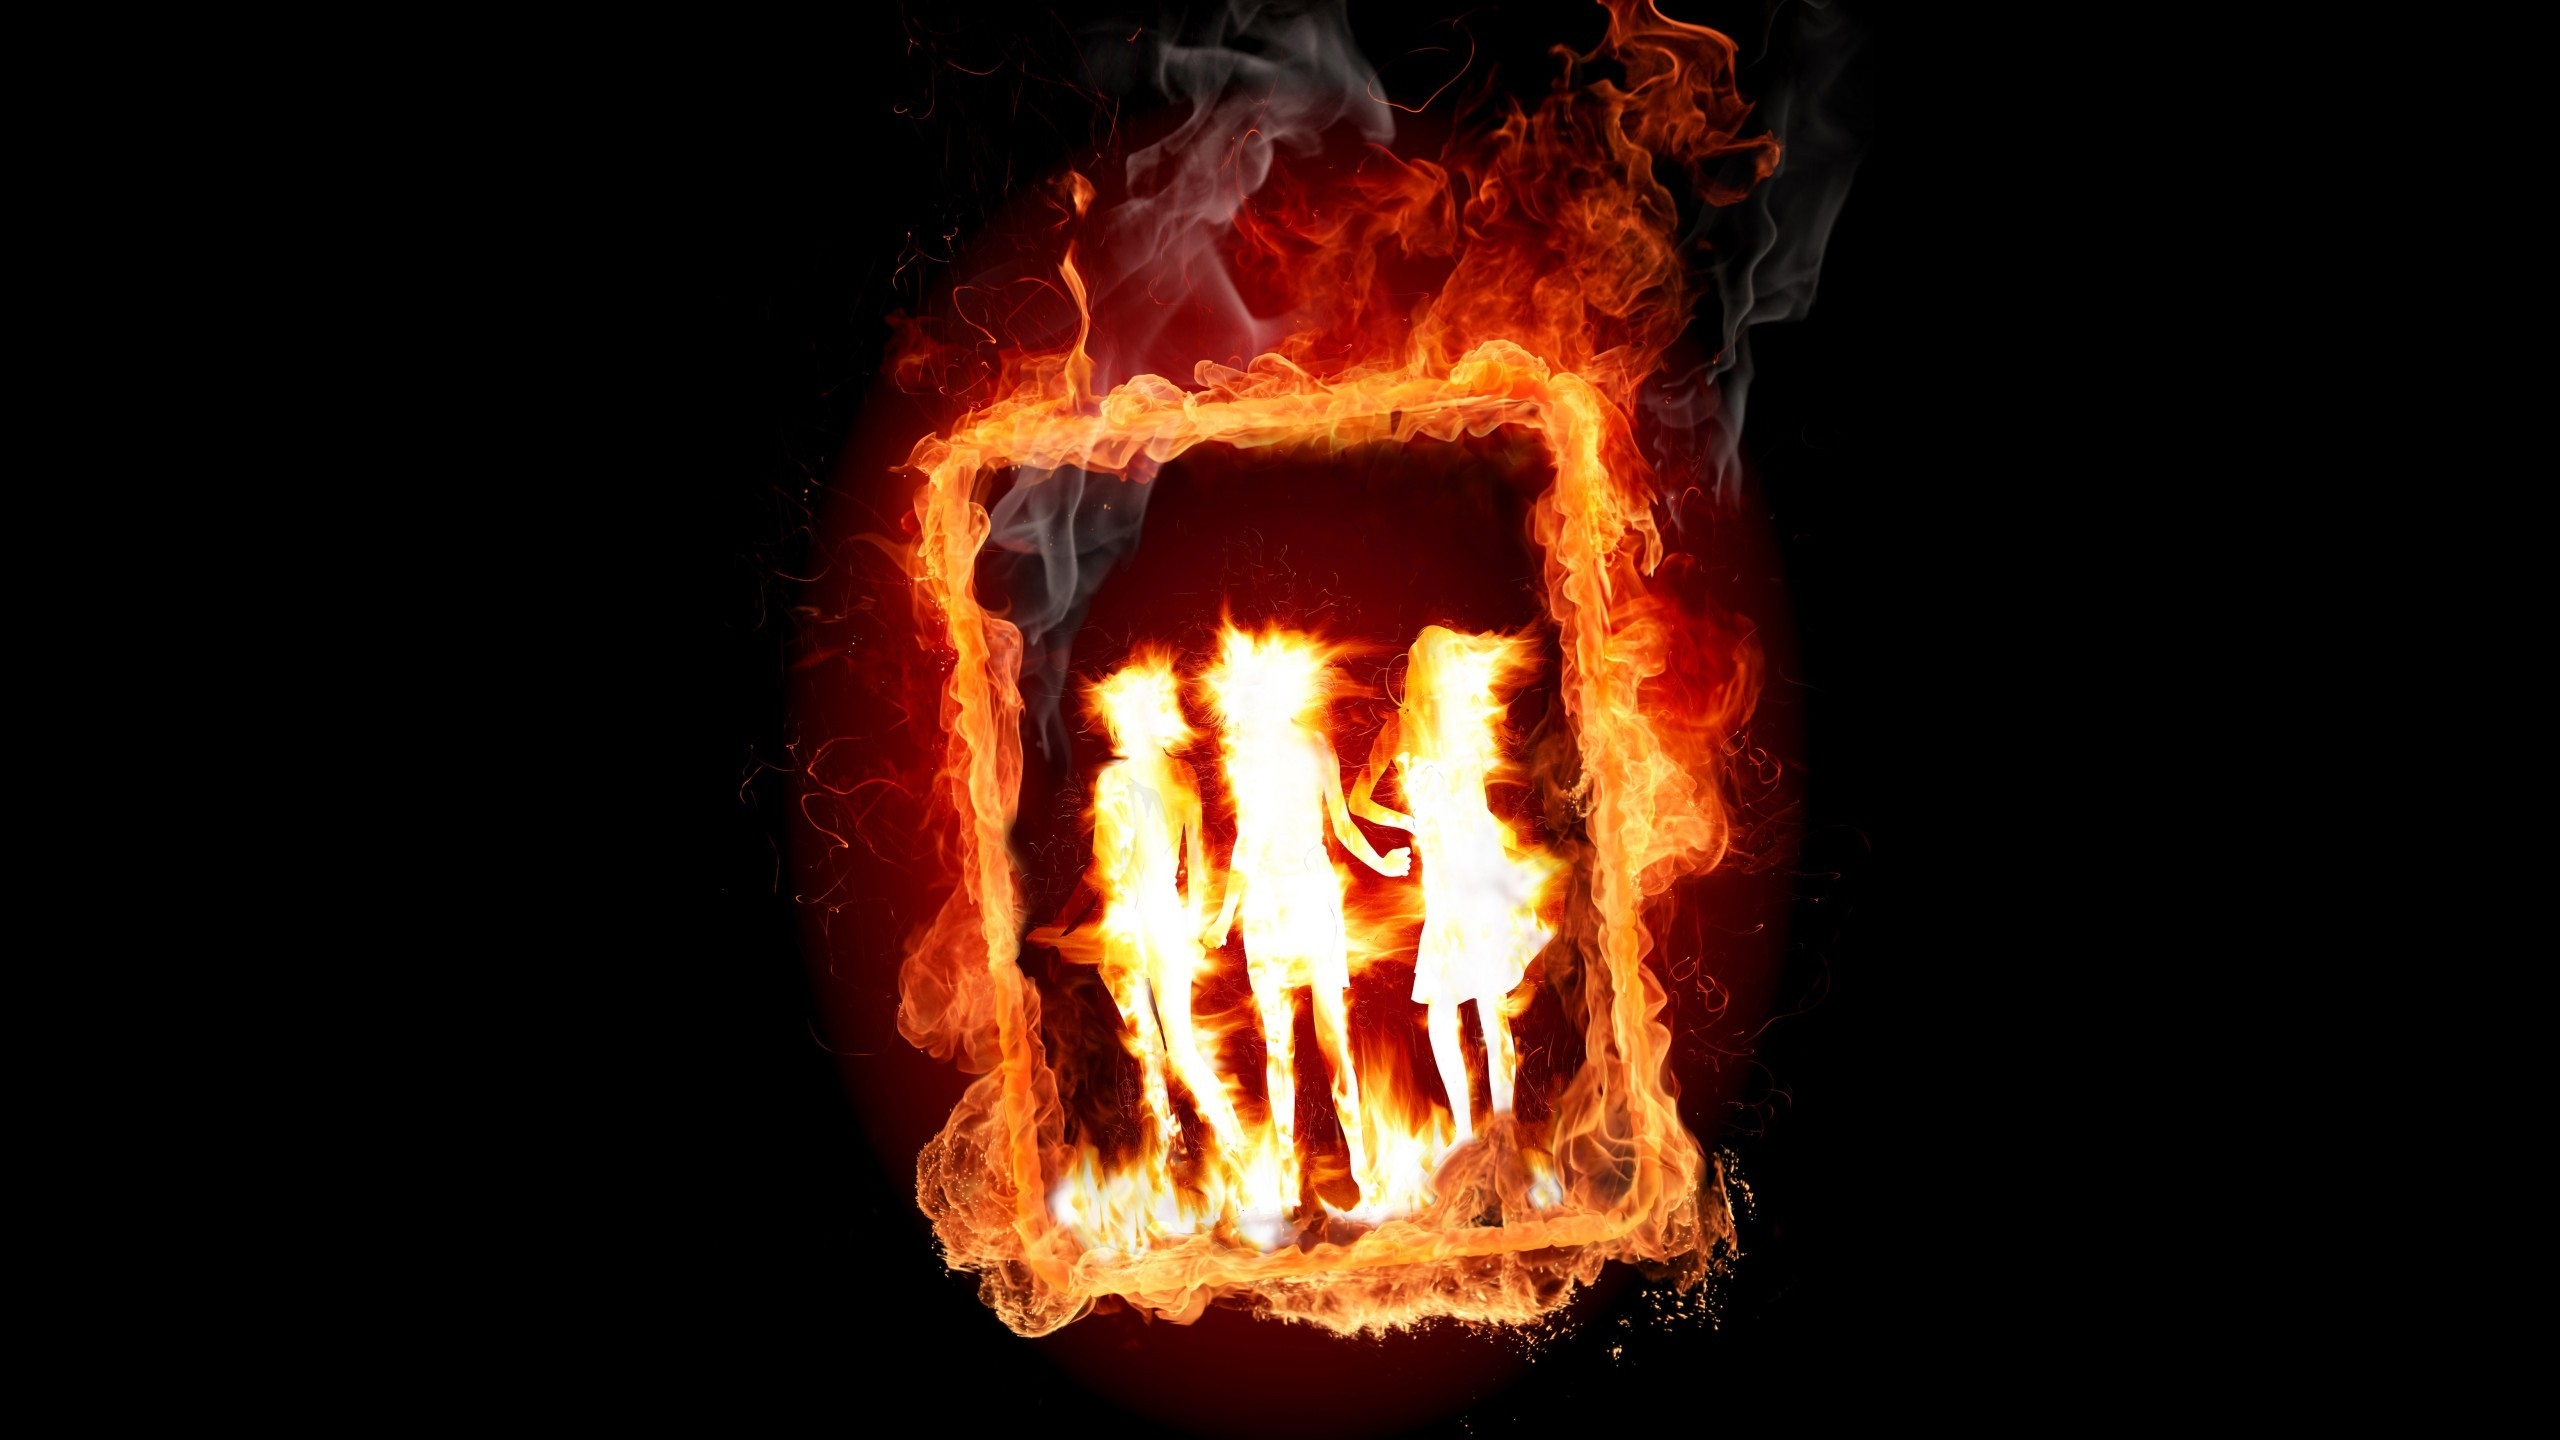 Girl Frame in Fire for 2560x1440 HDTV resolution